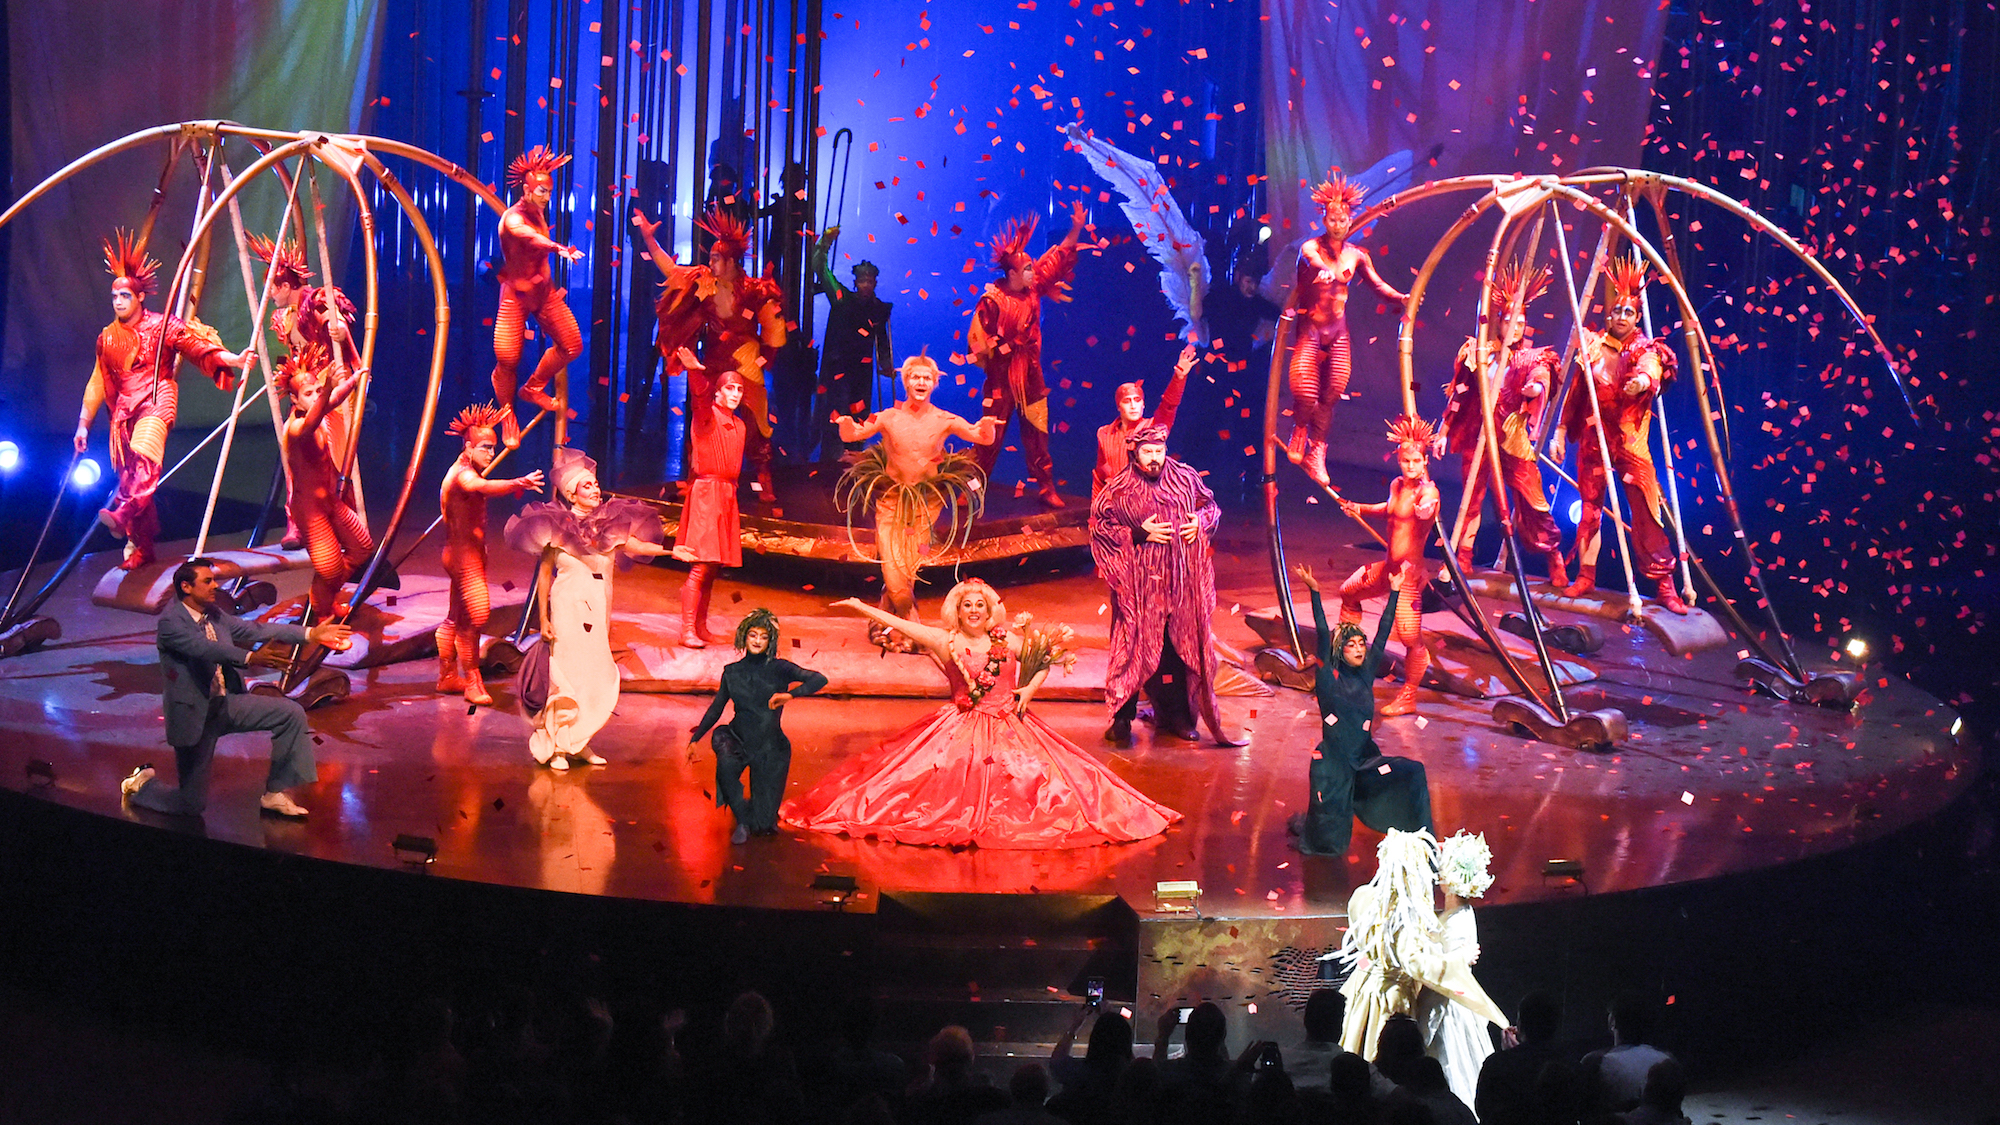 Ακροβάτης του Cirque du Soleil έπεσε και σκοτώθηκε στη διάρκεια παράστασης (φωτό)